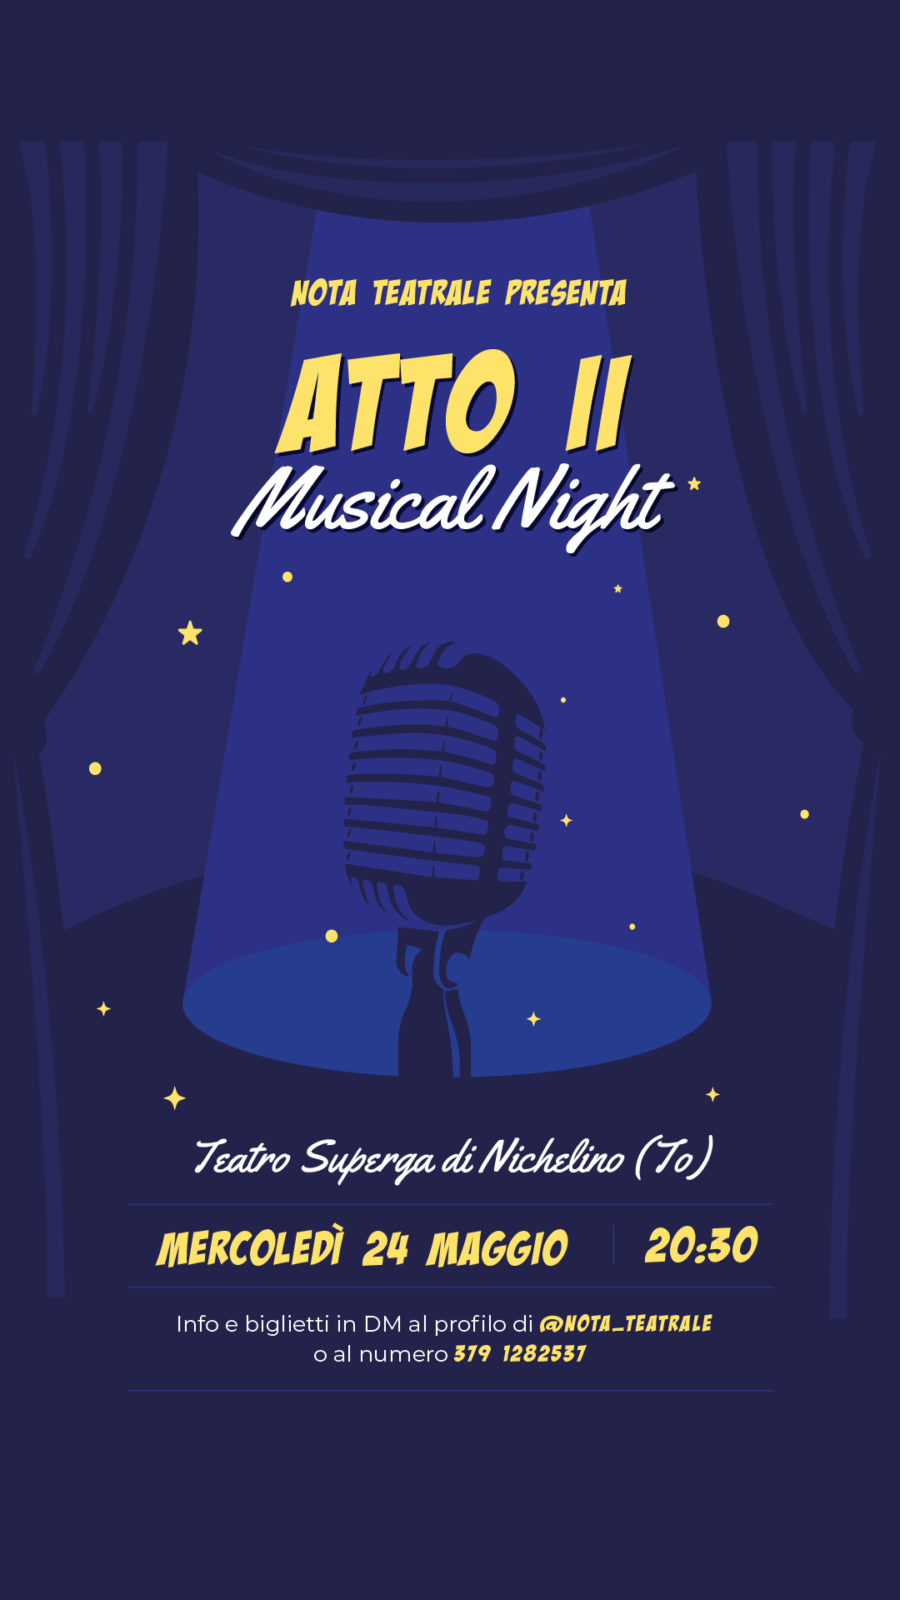 Atto II - Musical Night - Teatro Superga